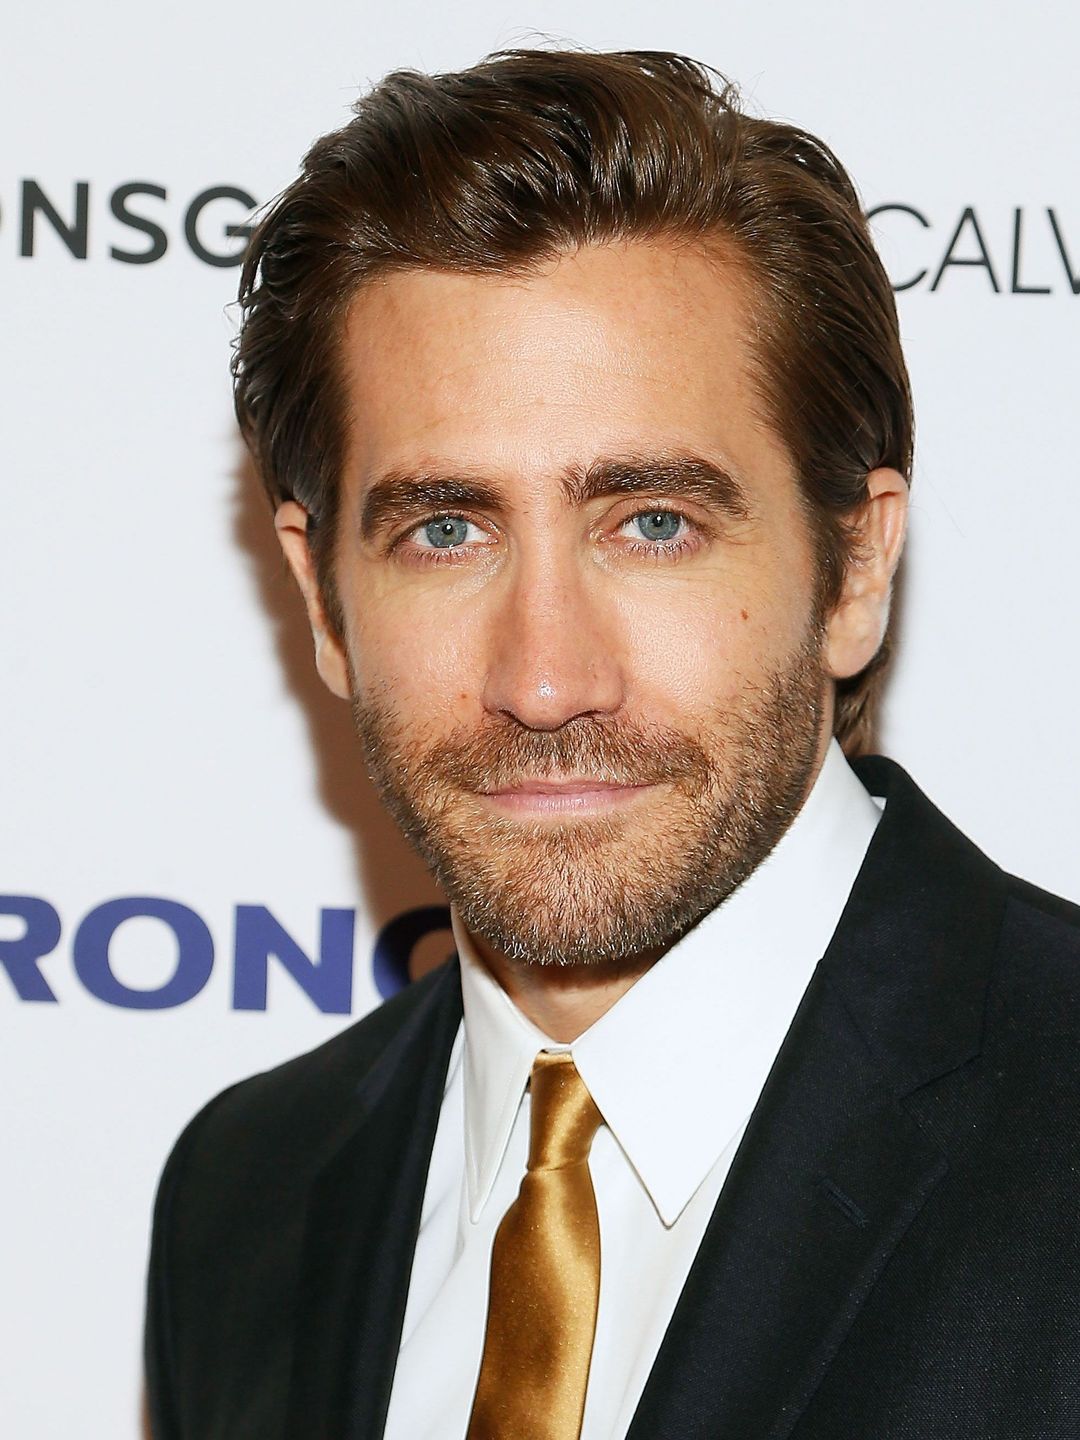 Jake Gyllenhaal early life